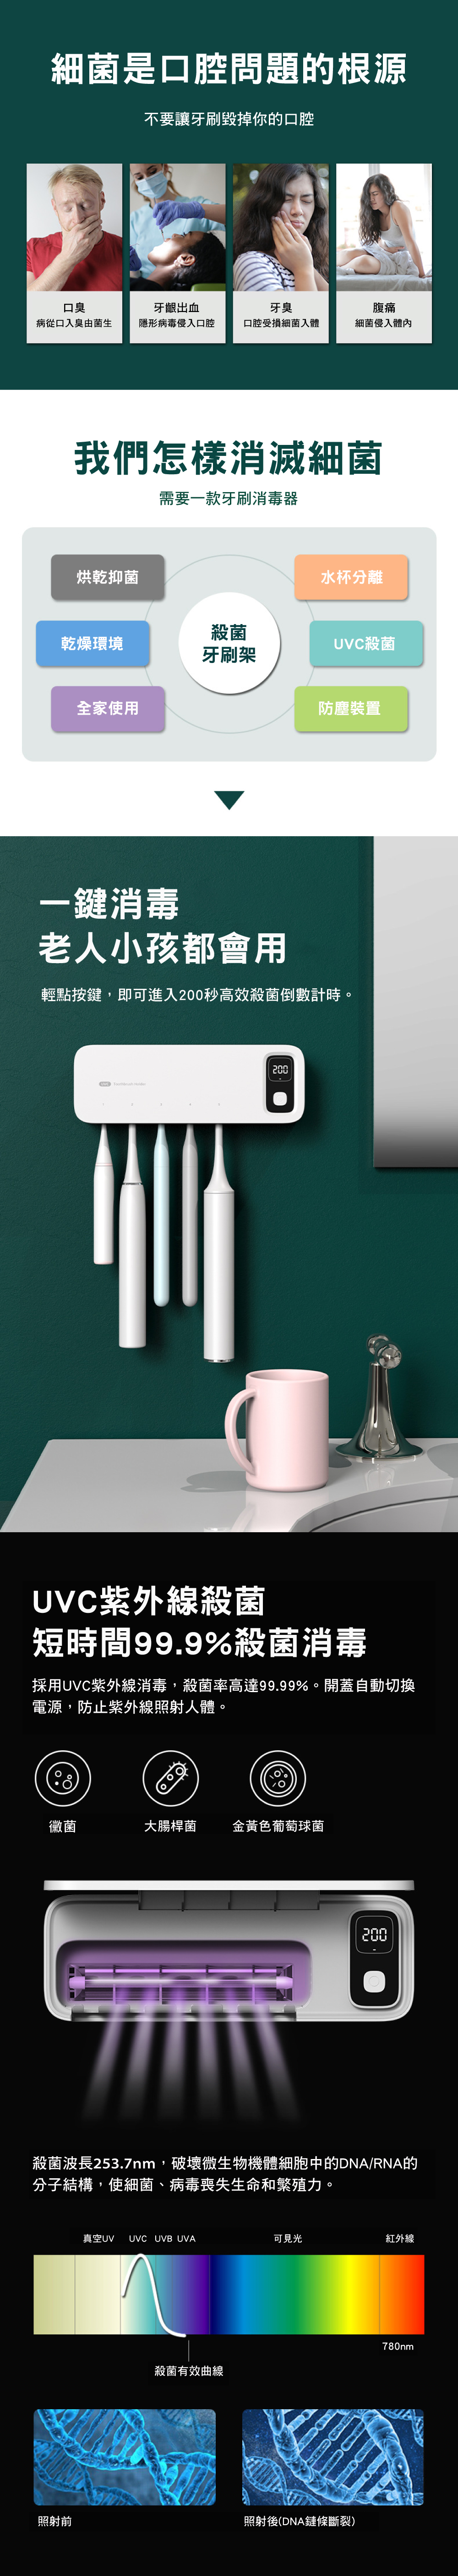 家居生活雜貨舖 USB充電壁掛殺菌風乾牙刷架 白色